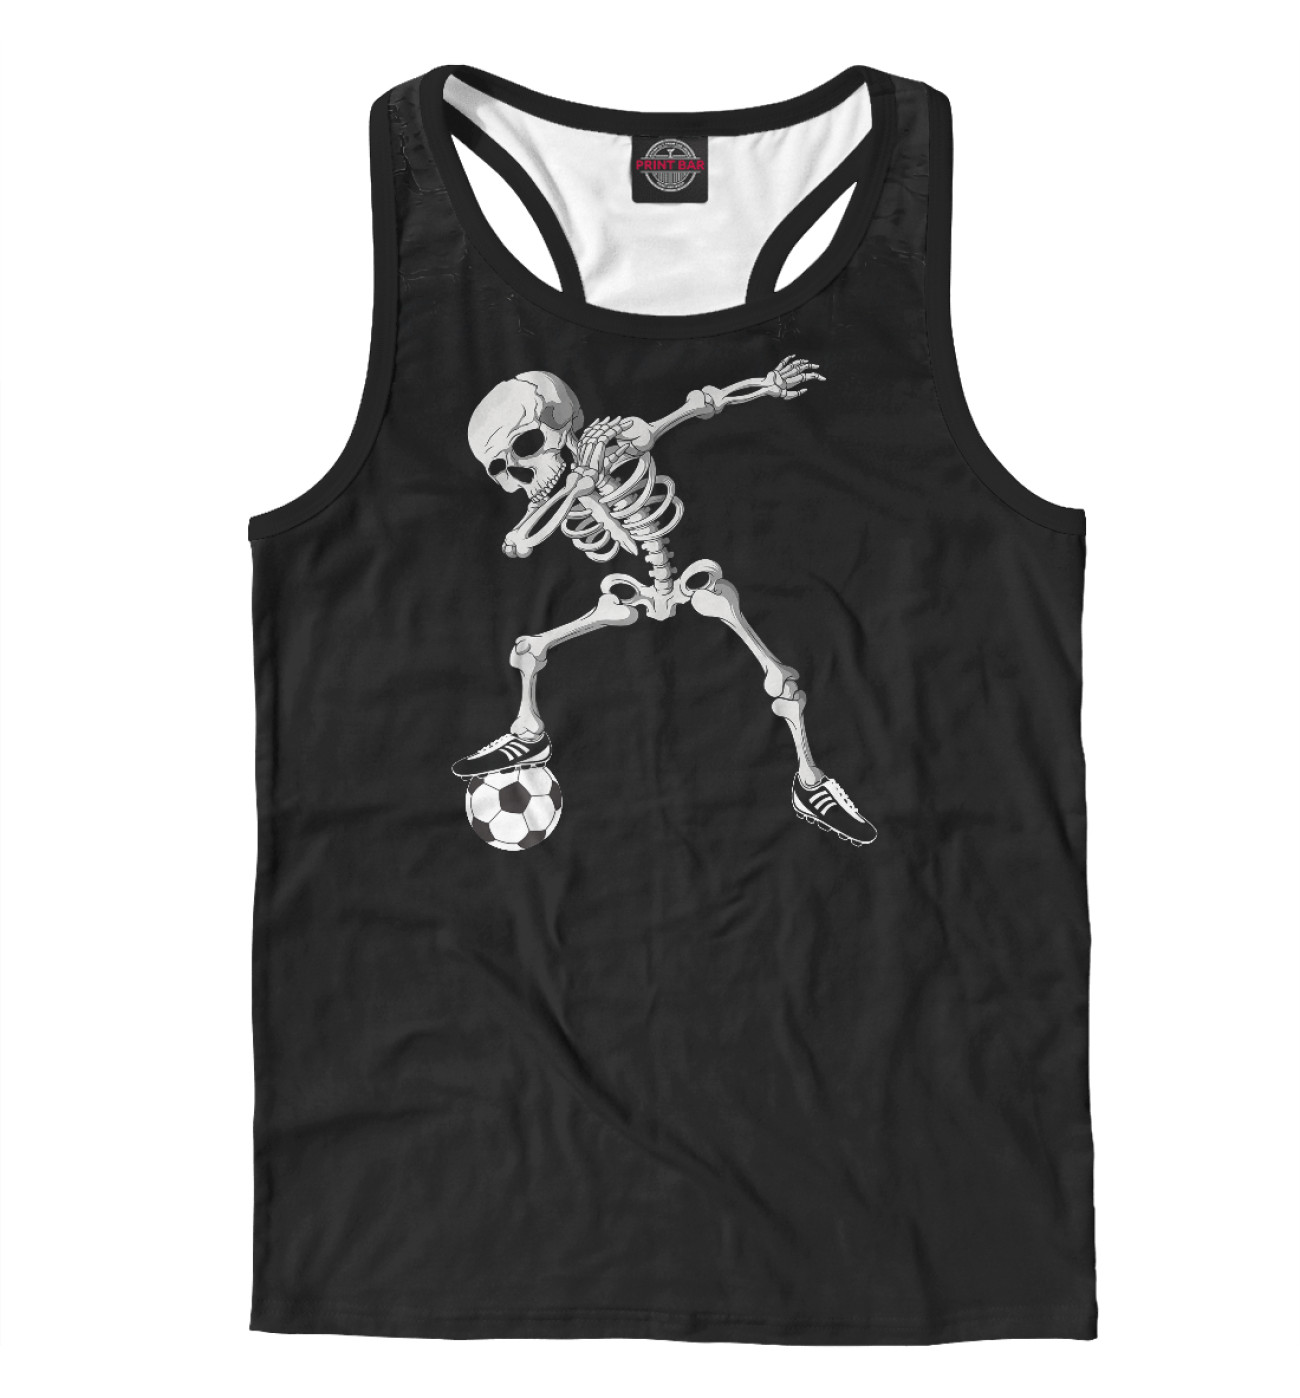 Мужская Борцовка Dabbing Skeleton Soccer, артикул: FTO-979165-mayb-2